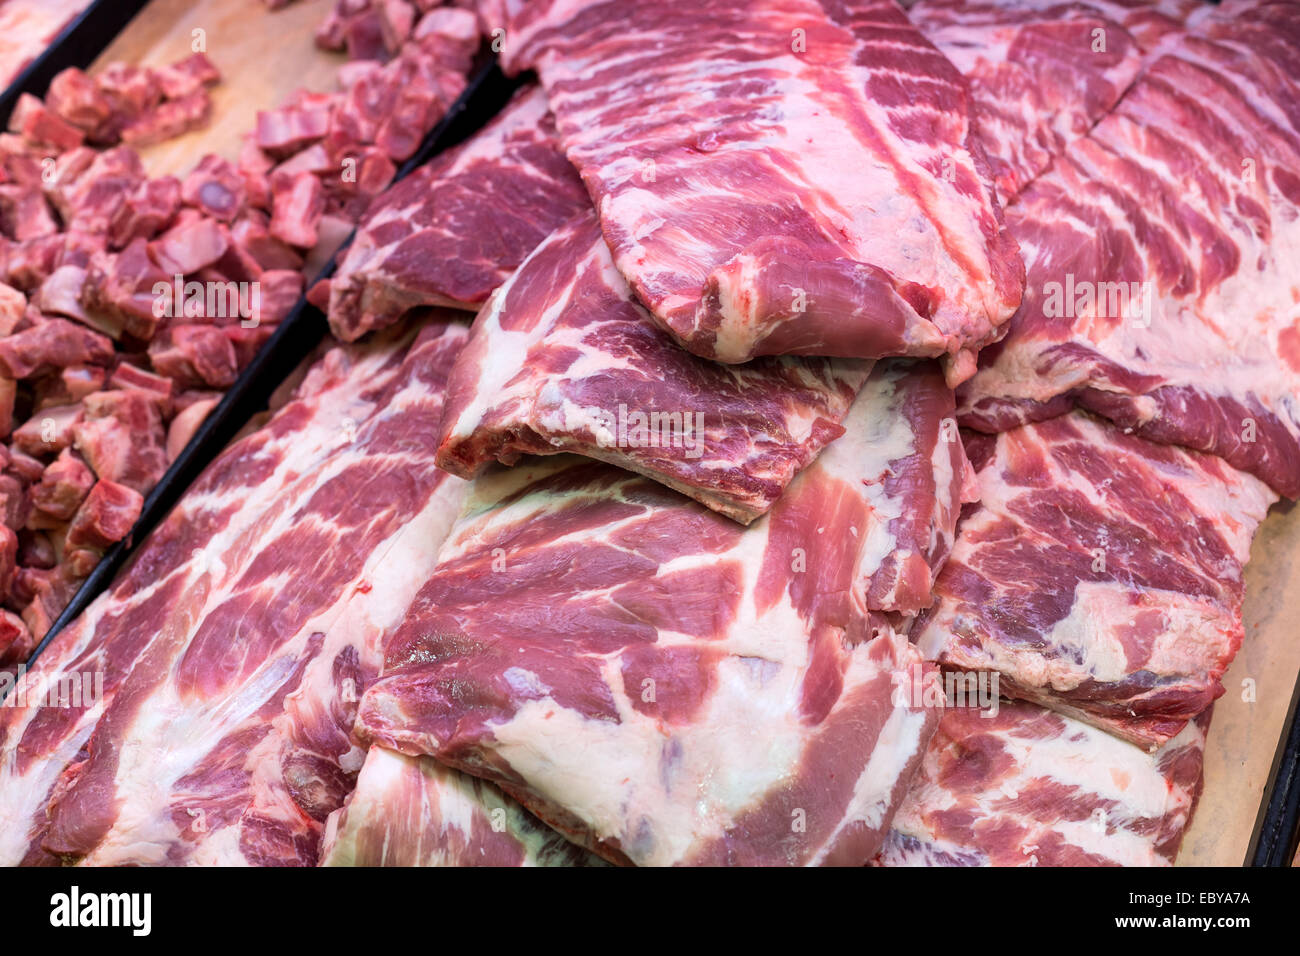 pork ribs in Butcher's Shop Stock Photo